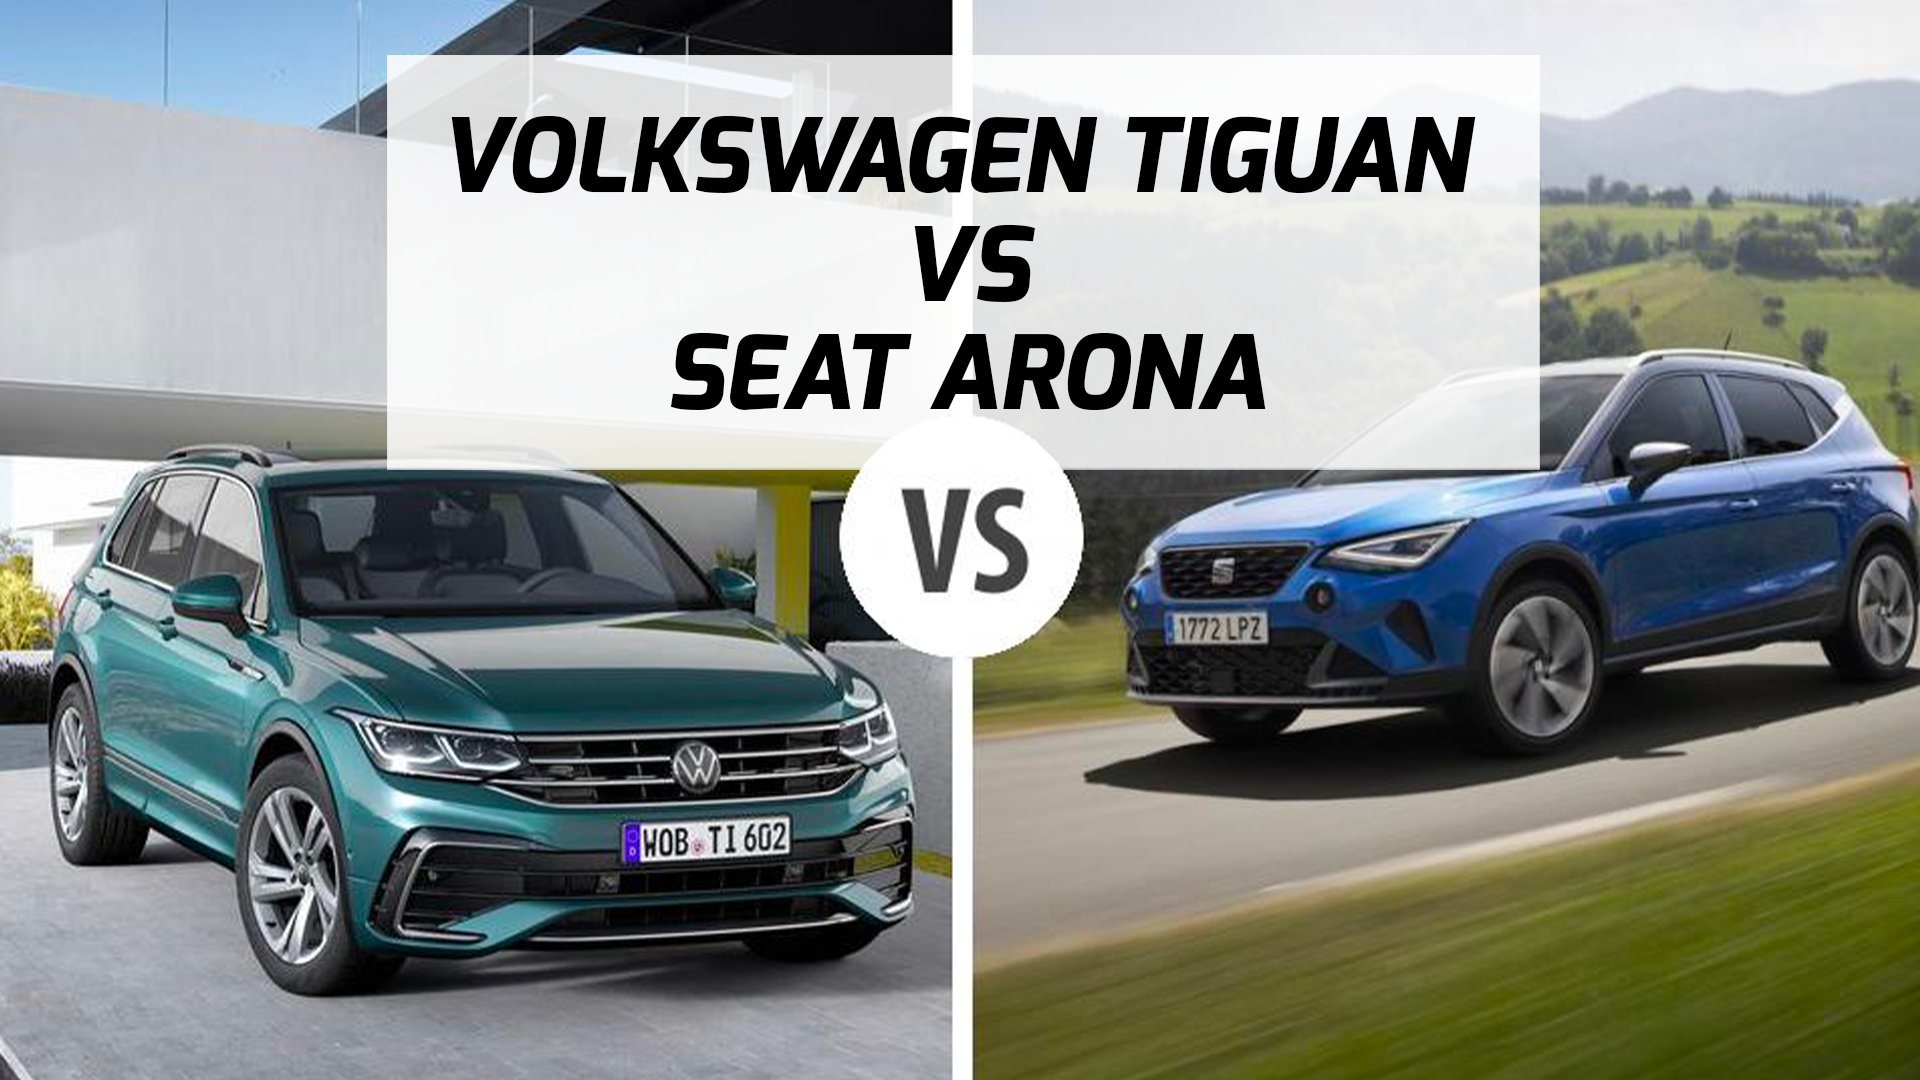 Volkswagen Tiguan Occasion vs Seat Arona Occasion